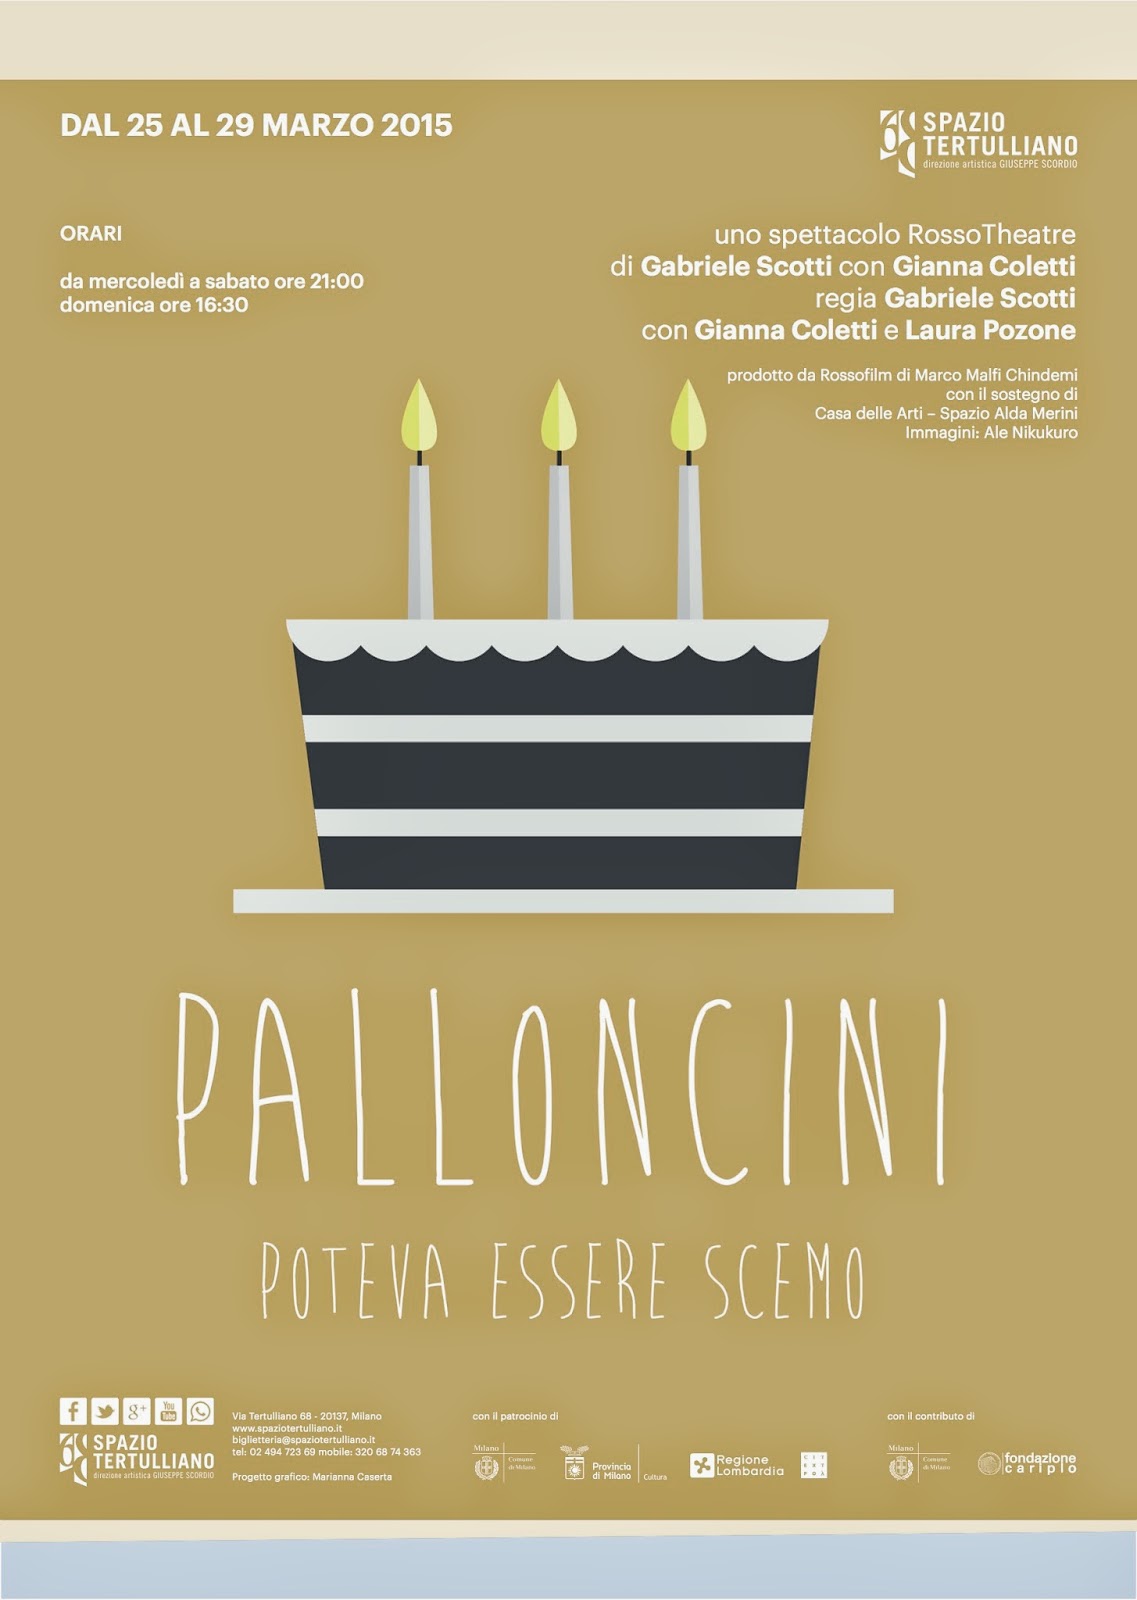 Dal 25 al 29 marzo: Palloncini - Poteva essere scemo allo Spazio Tertulliano Milano